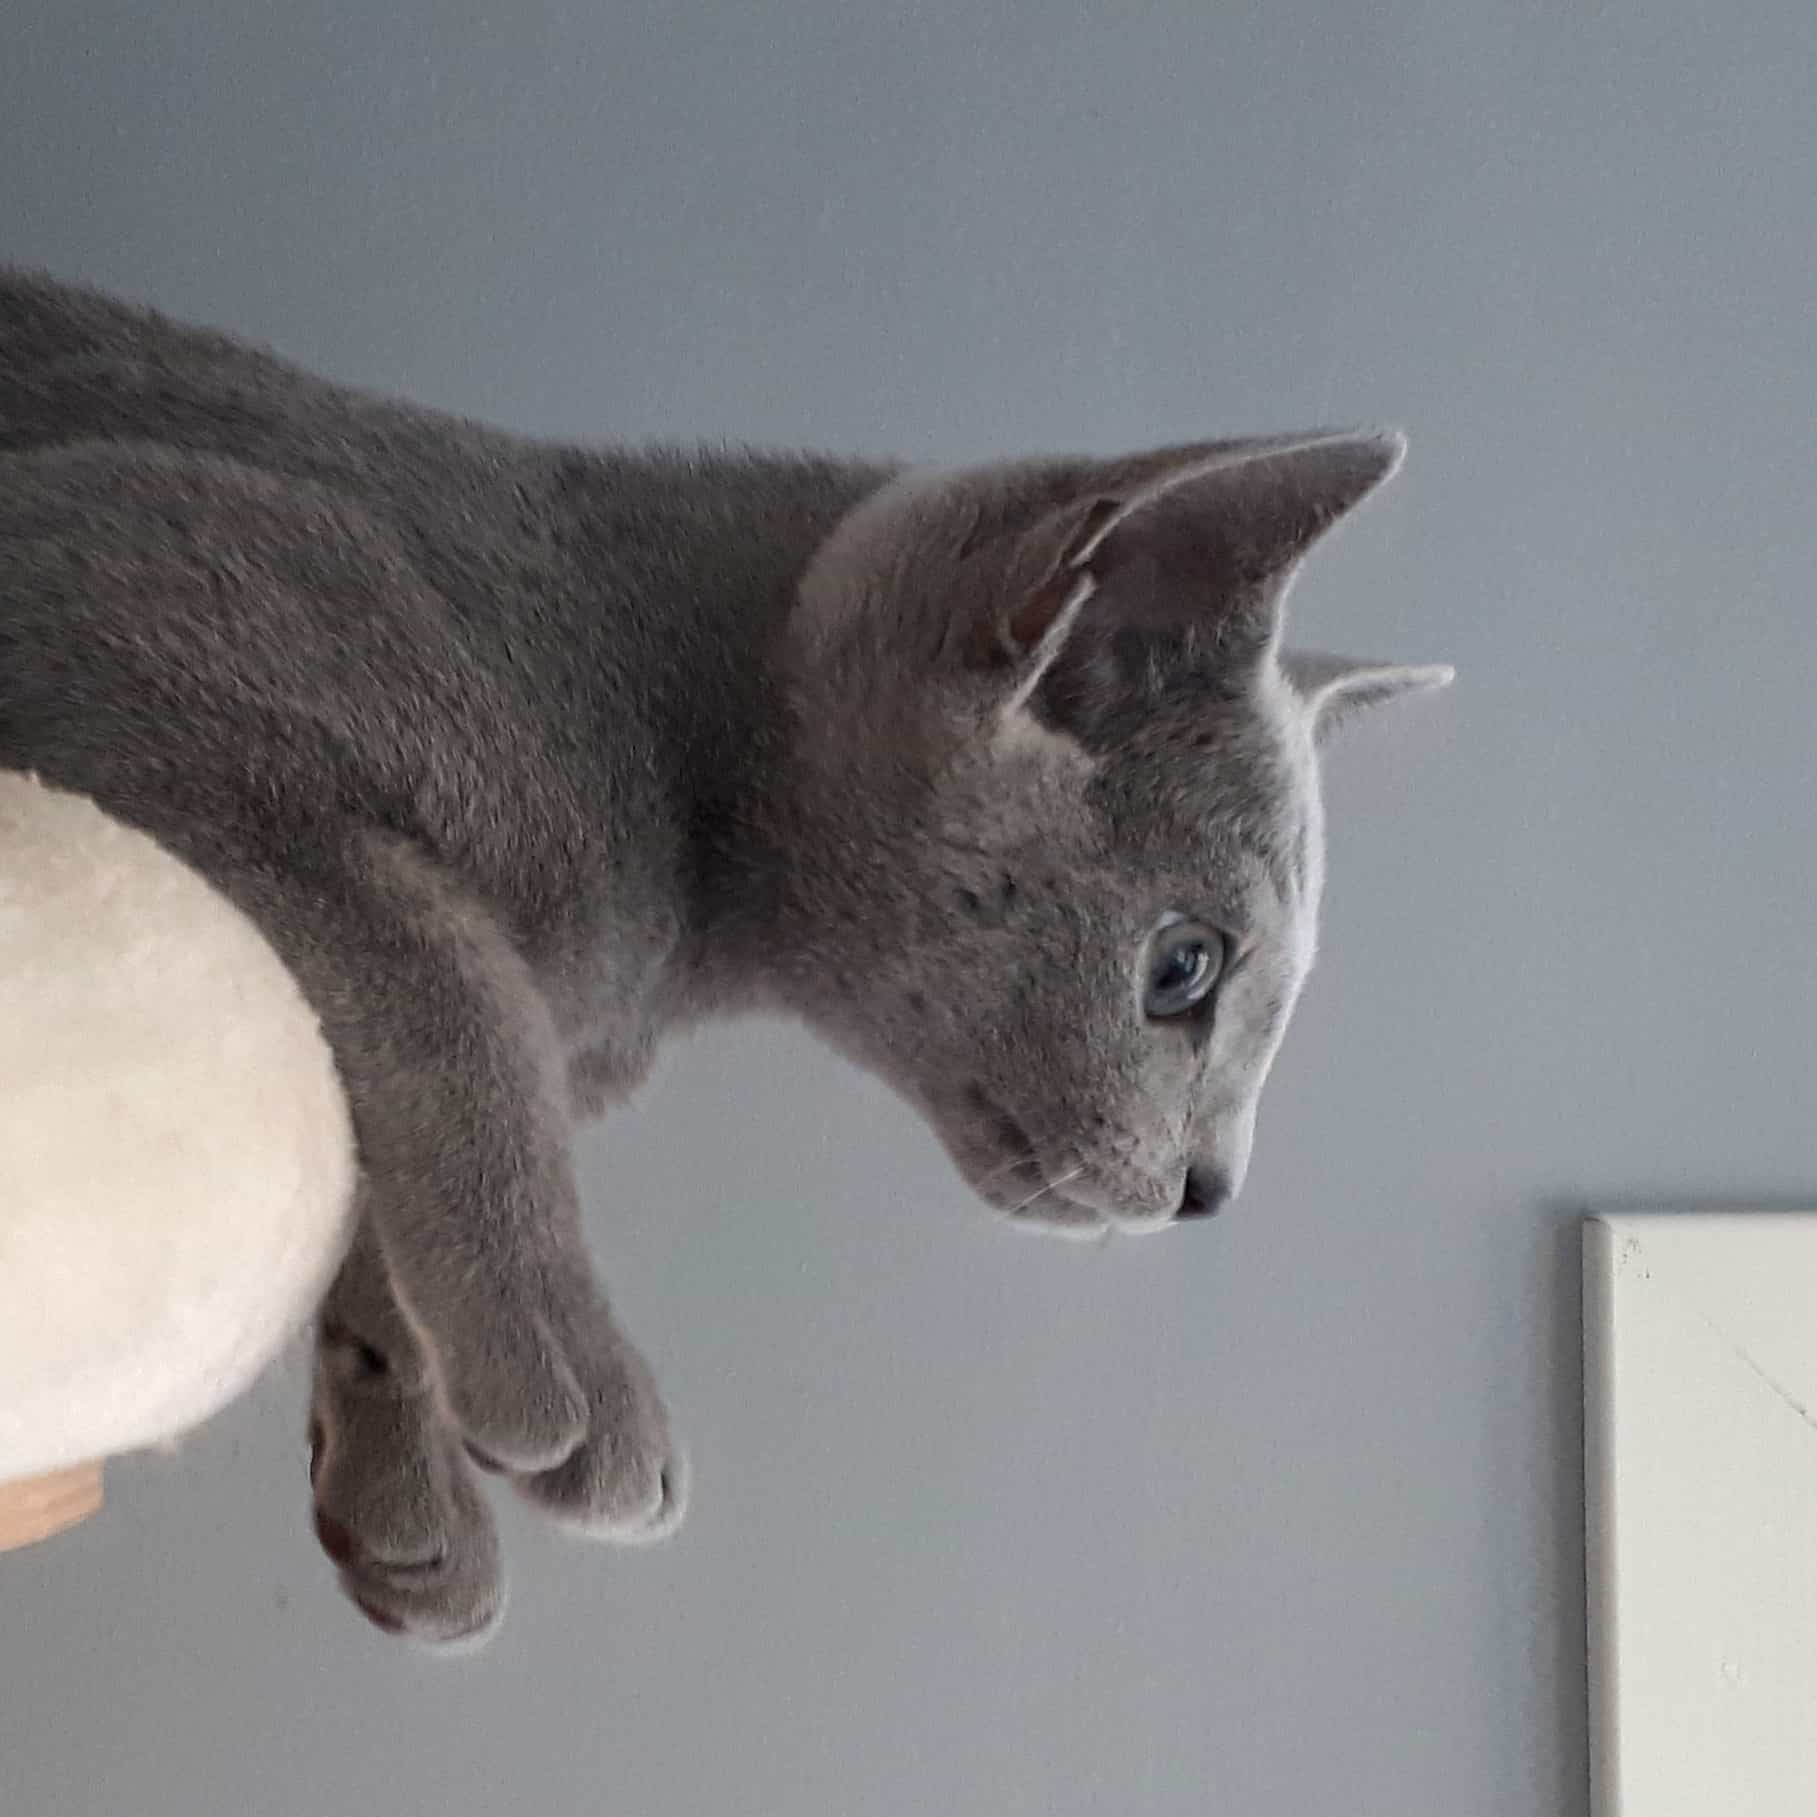 Russian Blue kattunge hänger ut med framtassarna, huvudet och överkroppen från ett benvitt katt-träd. Kattungen syns i profil och den tittar snett nedåt. Väggen bakom är grå, men i en ljusare nyans än den grå kattungen.